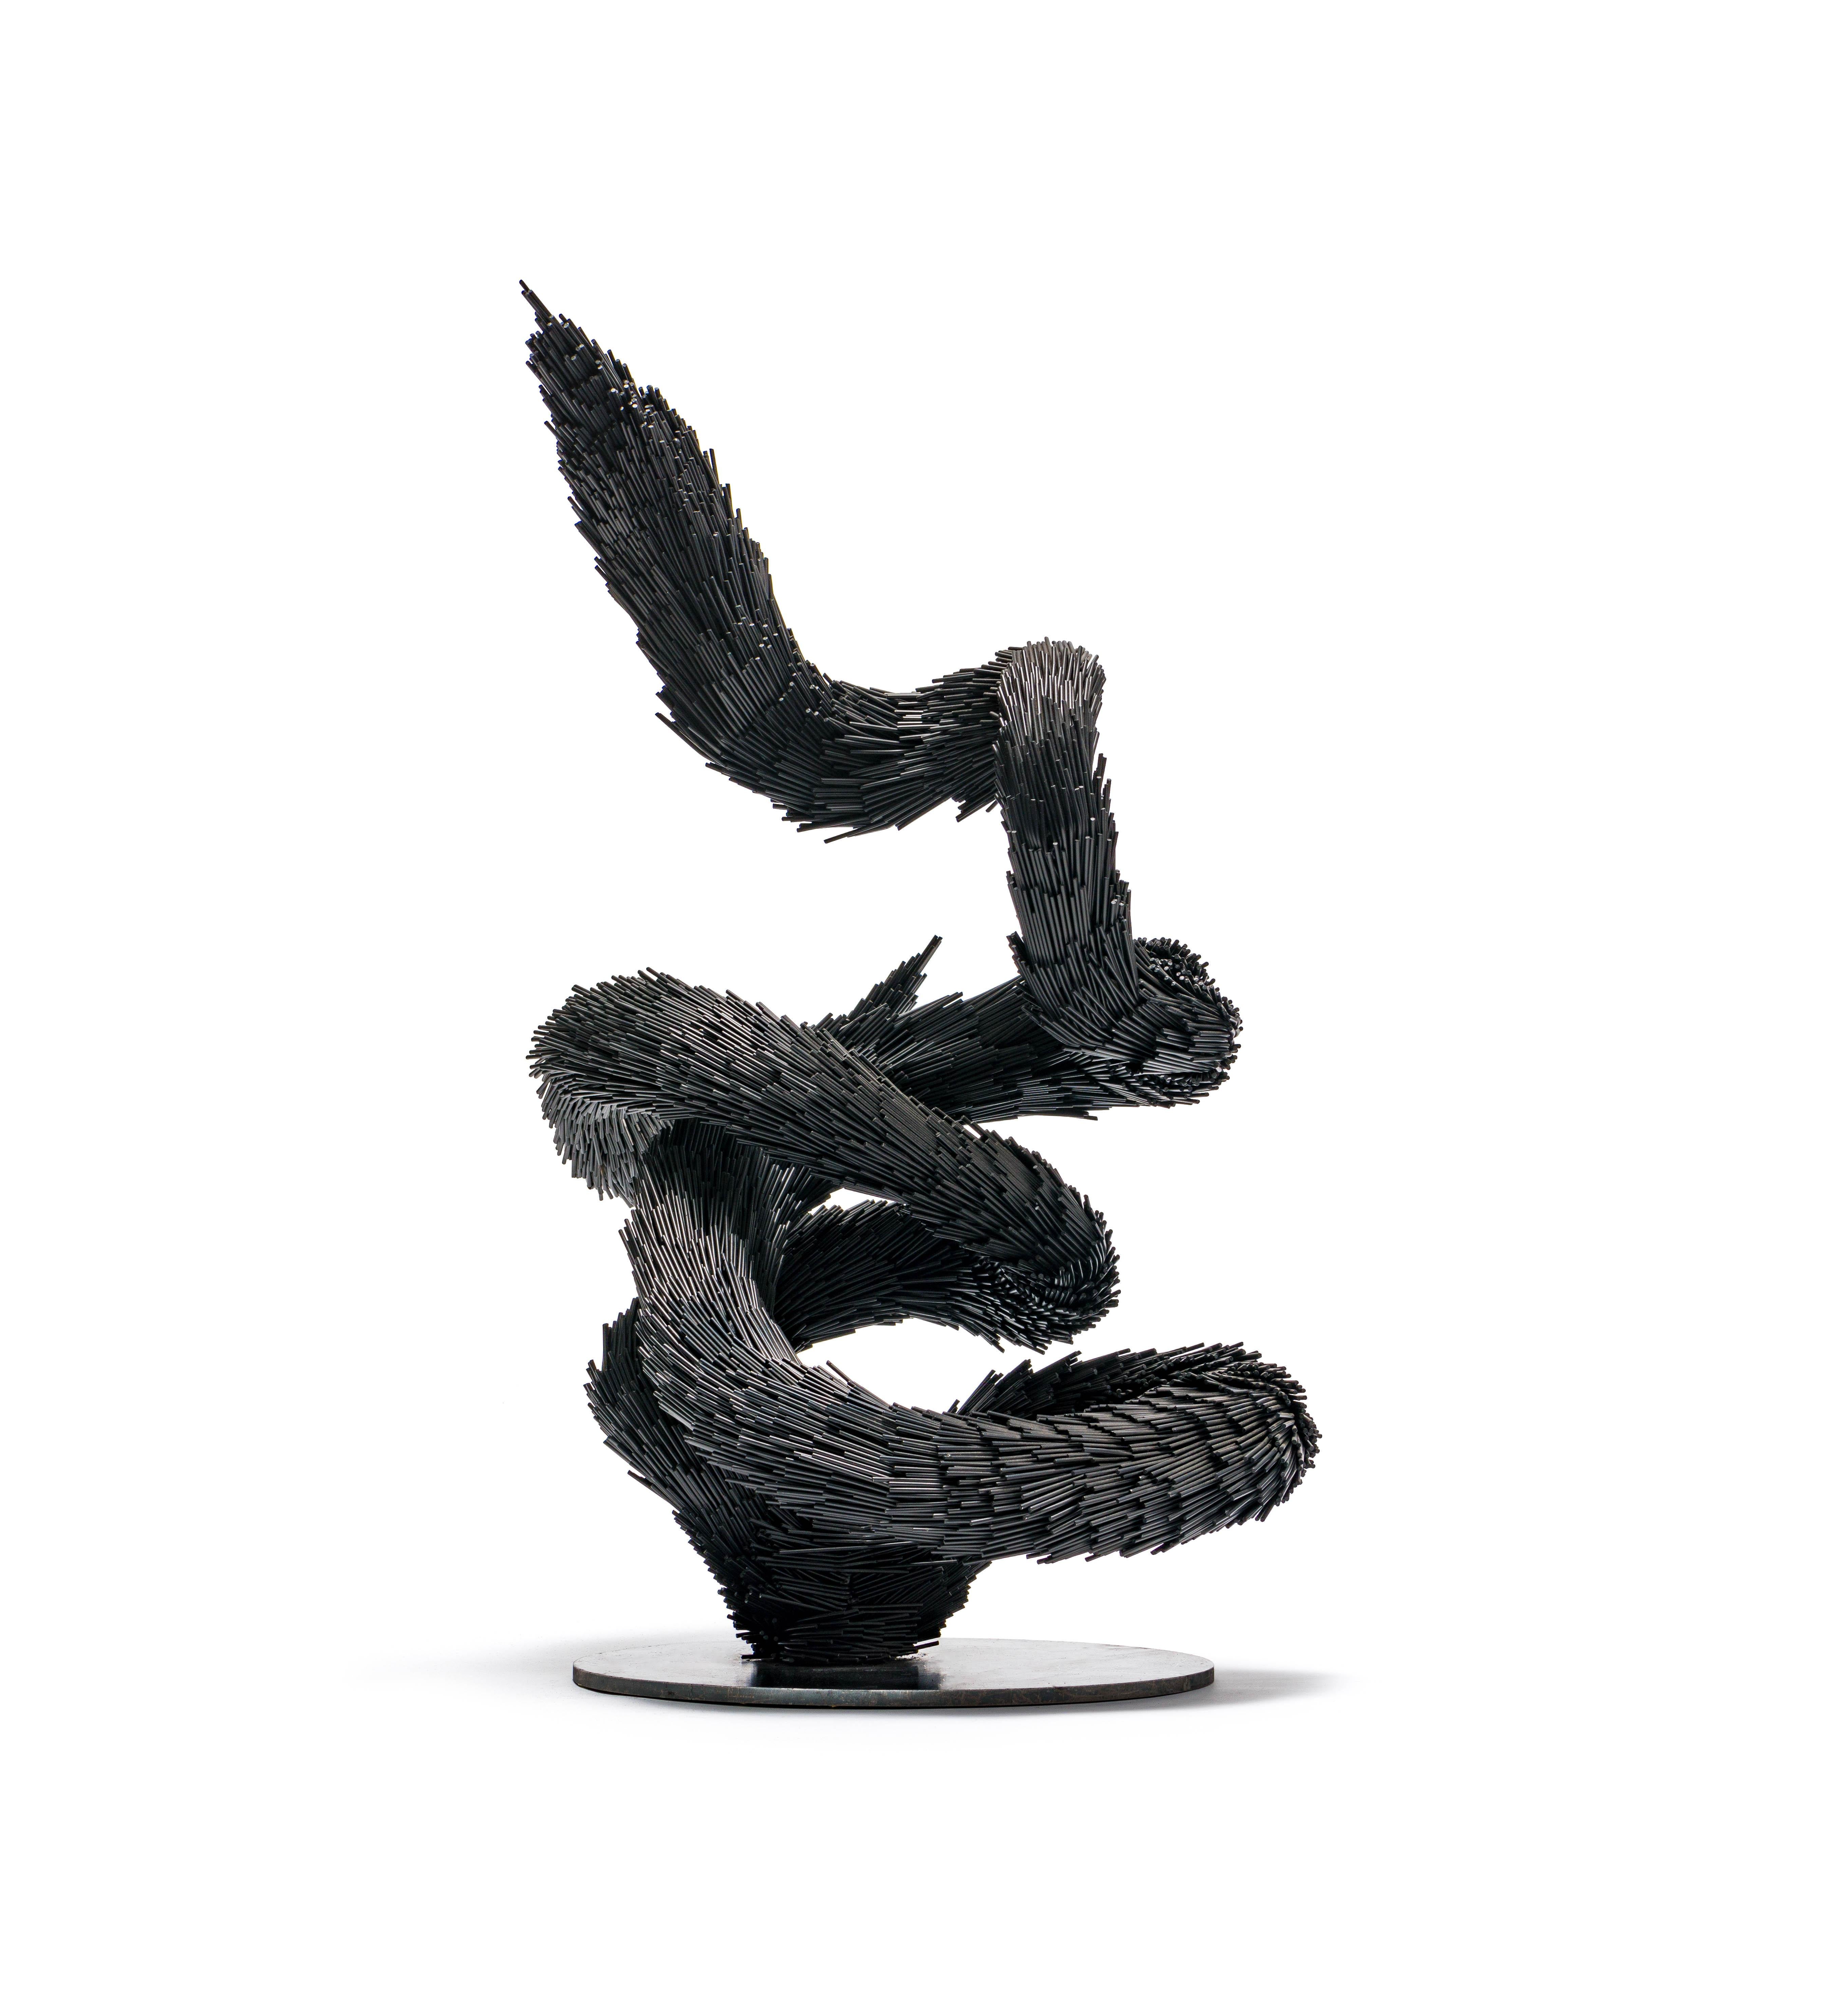 Jake Michael Singer Figurative Sculpture – Skulptur "untitled", zeitgenössische Schlangenskulptur aus Stahl in Schwarz